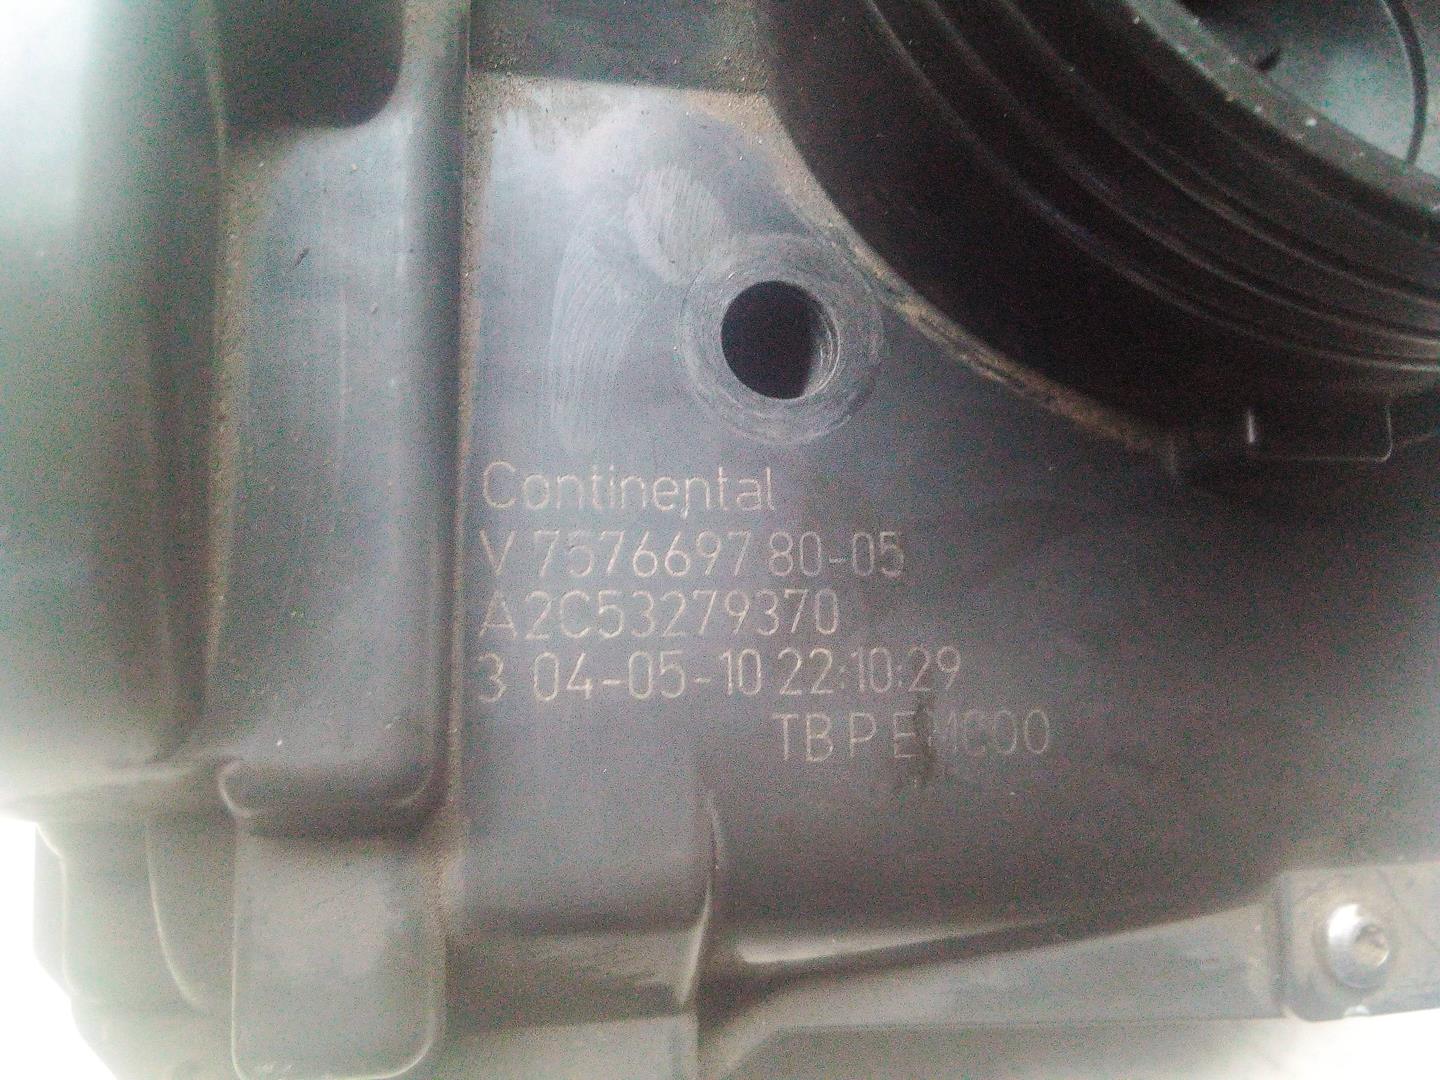 MINI Cooper R56 (2006-2015) Дроссельная заслонка V75766978005, A2C53279370 18517509